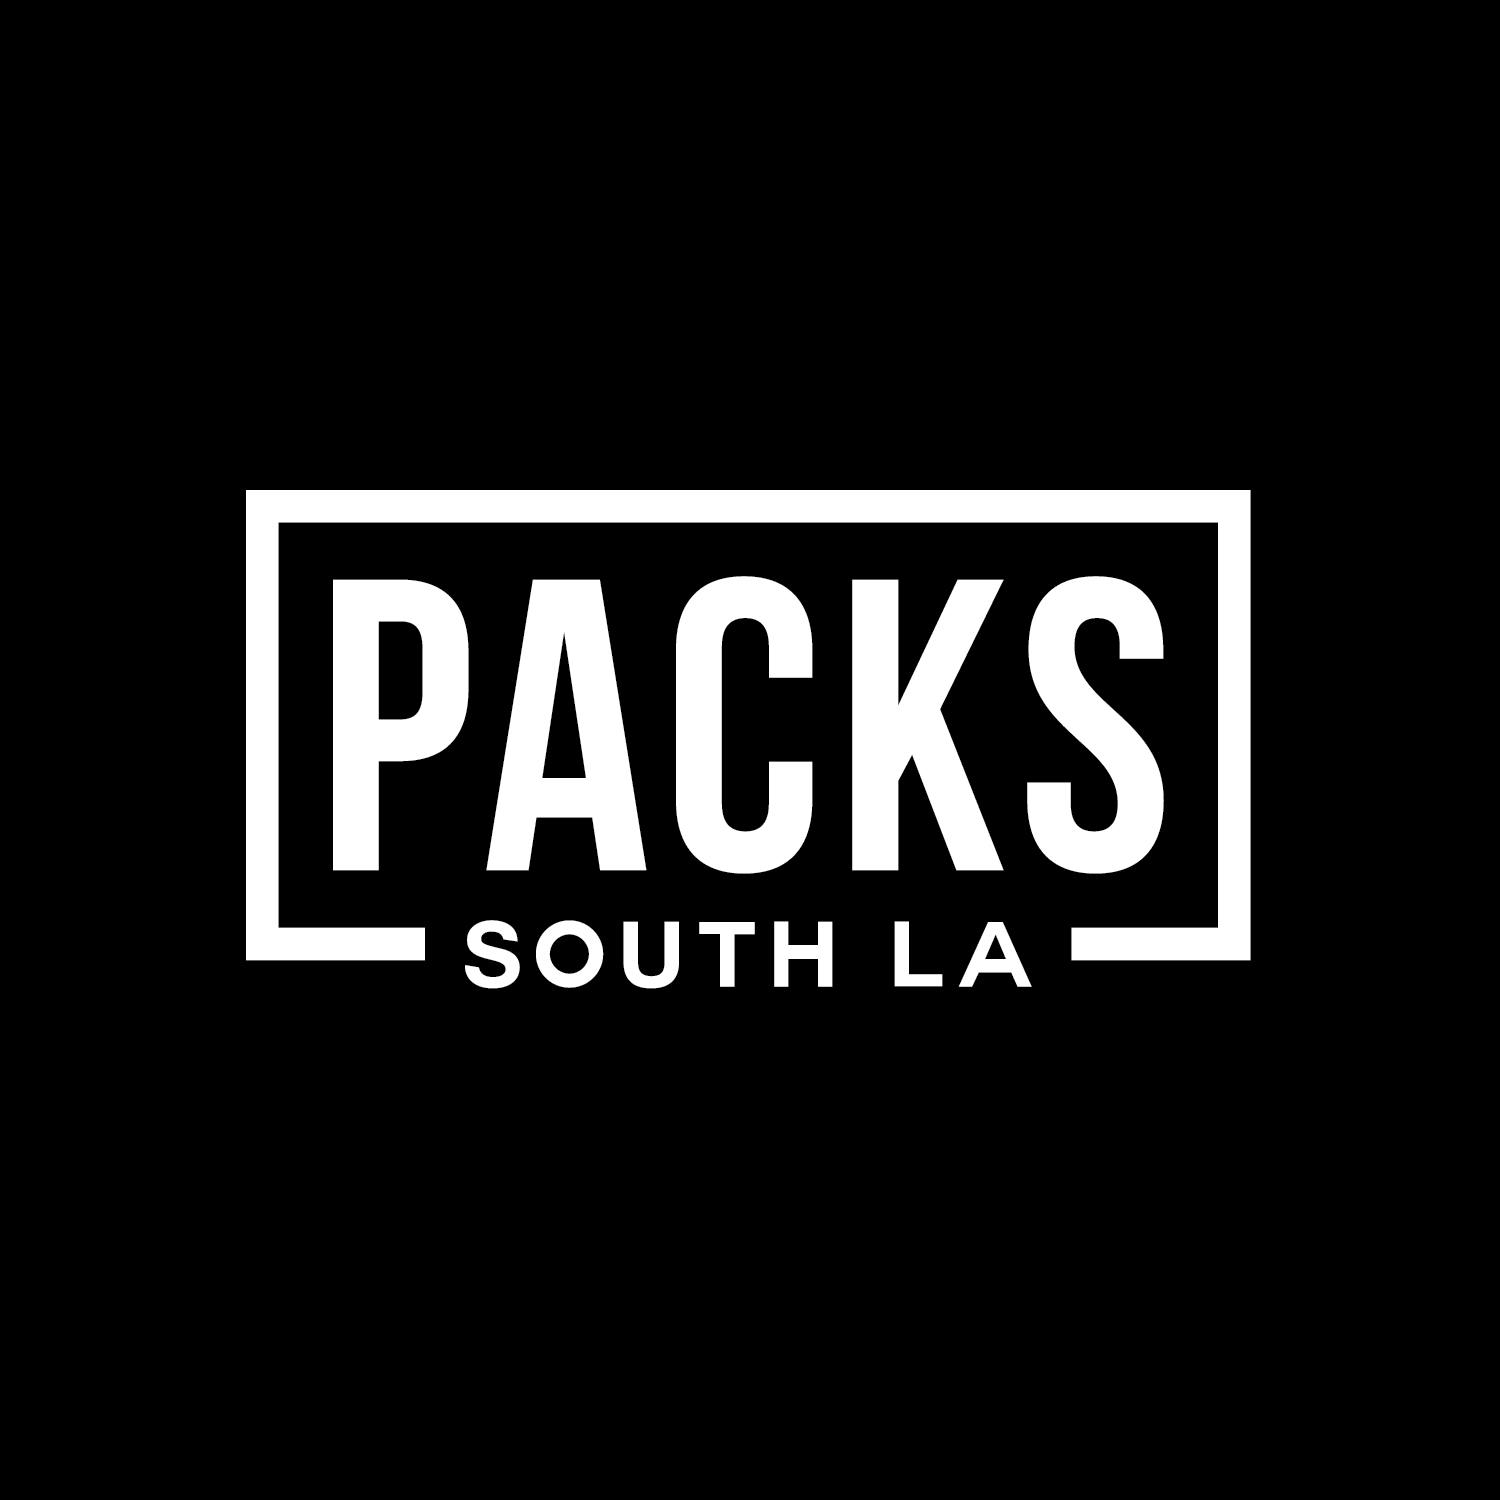 PACKS - SOUTH LA logo